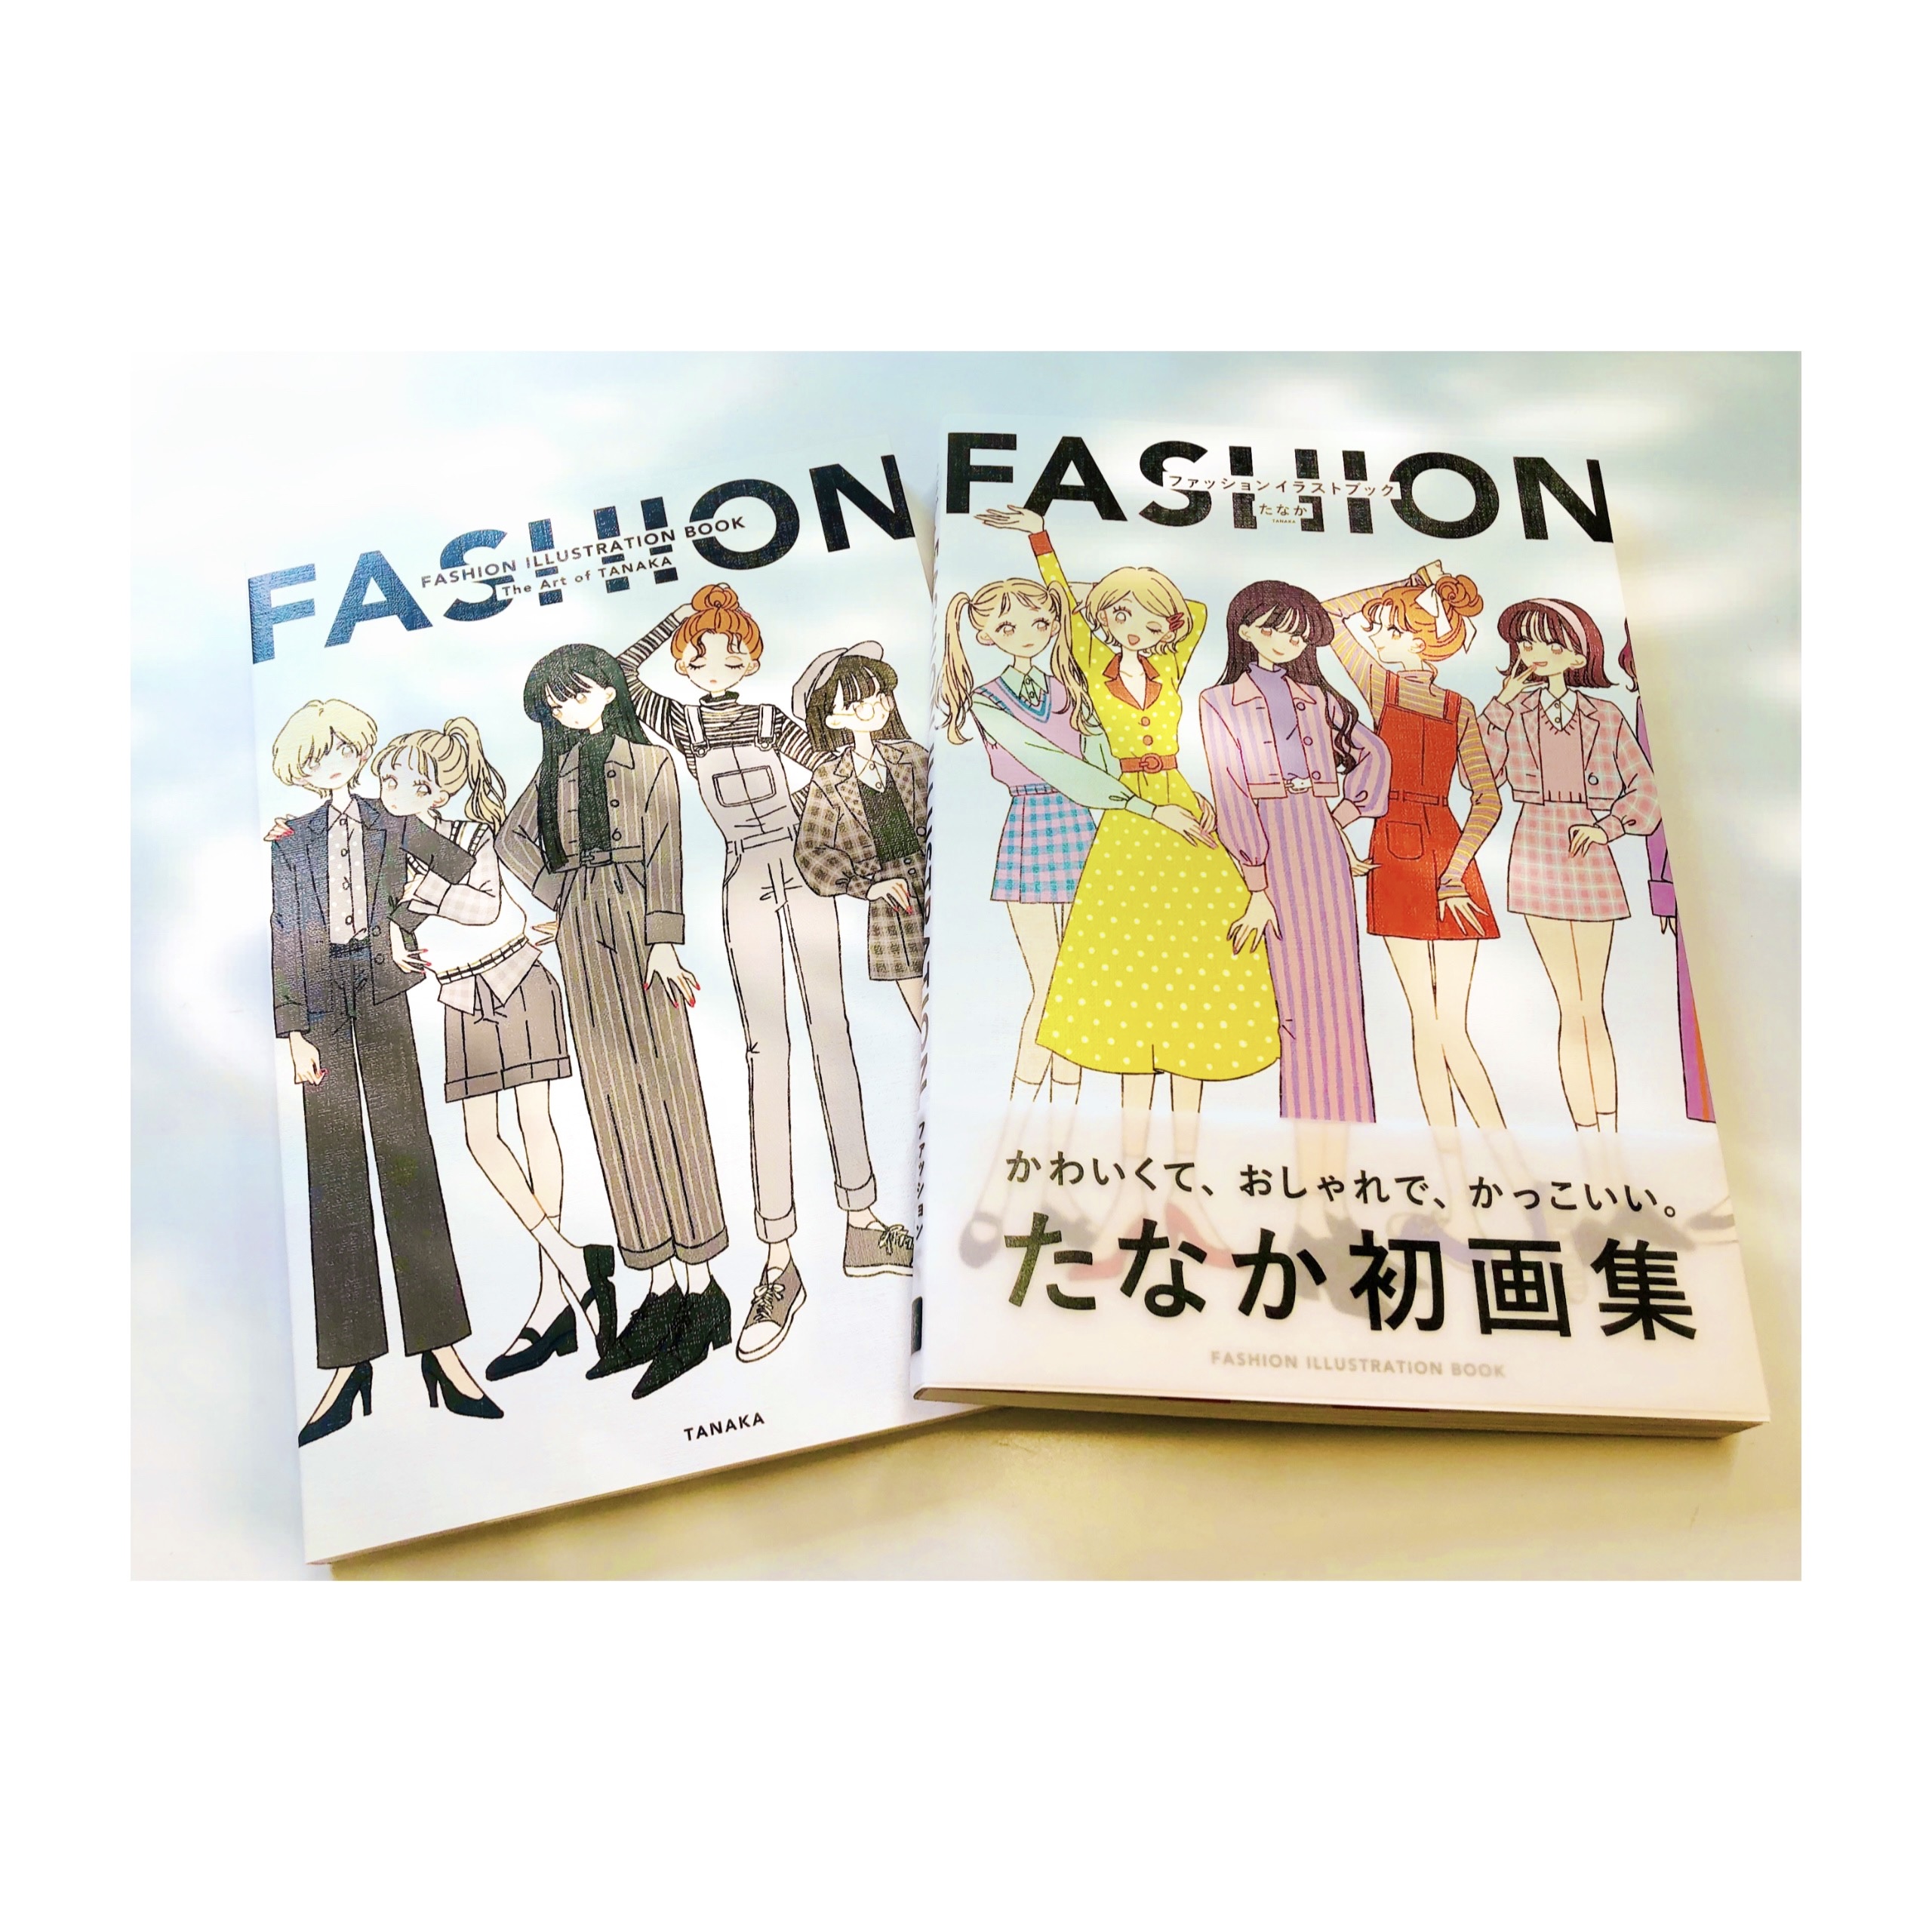 Pie Comic Art 祝4刷出来 たなかさん Gojio の Fashion Illustration Book たなか ファッションイラストブック が大好評につき 国内版 海外版ともに重版出来いたしました 電子版も好評発売中です ぜひお手元でお楽しみください